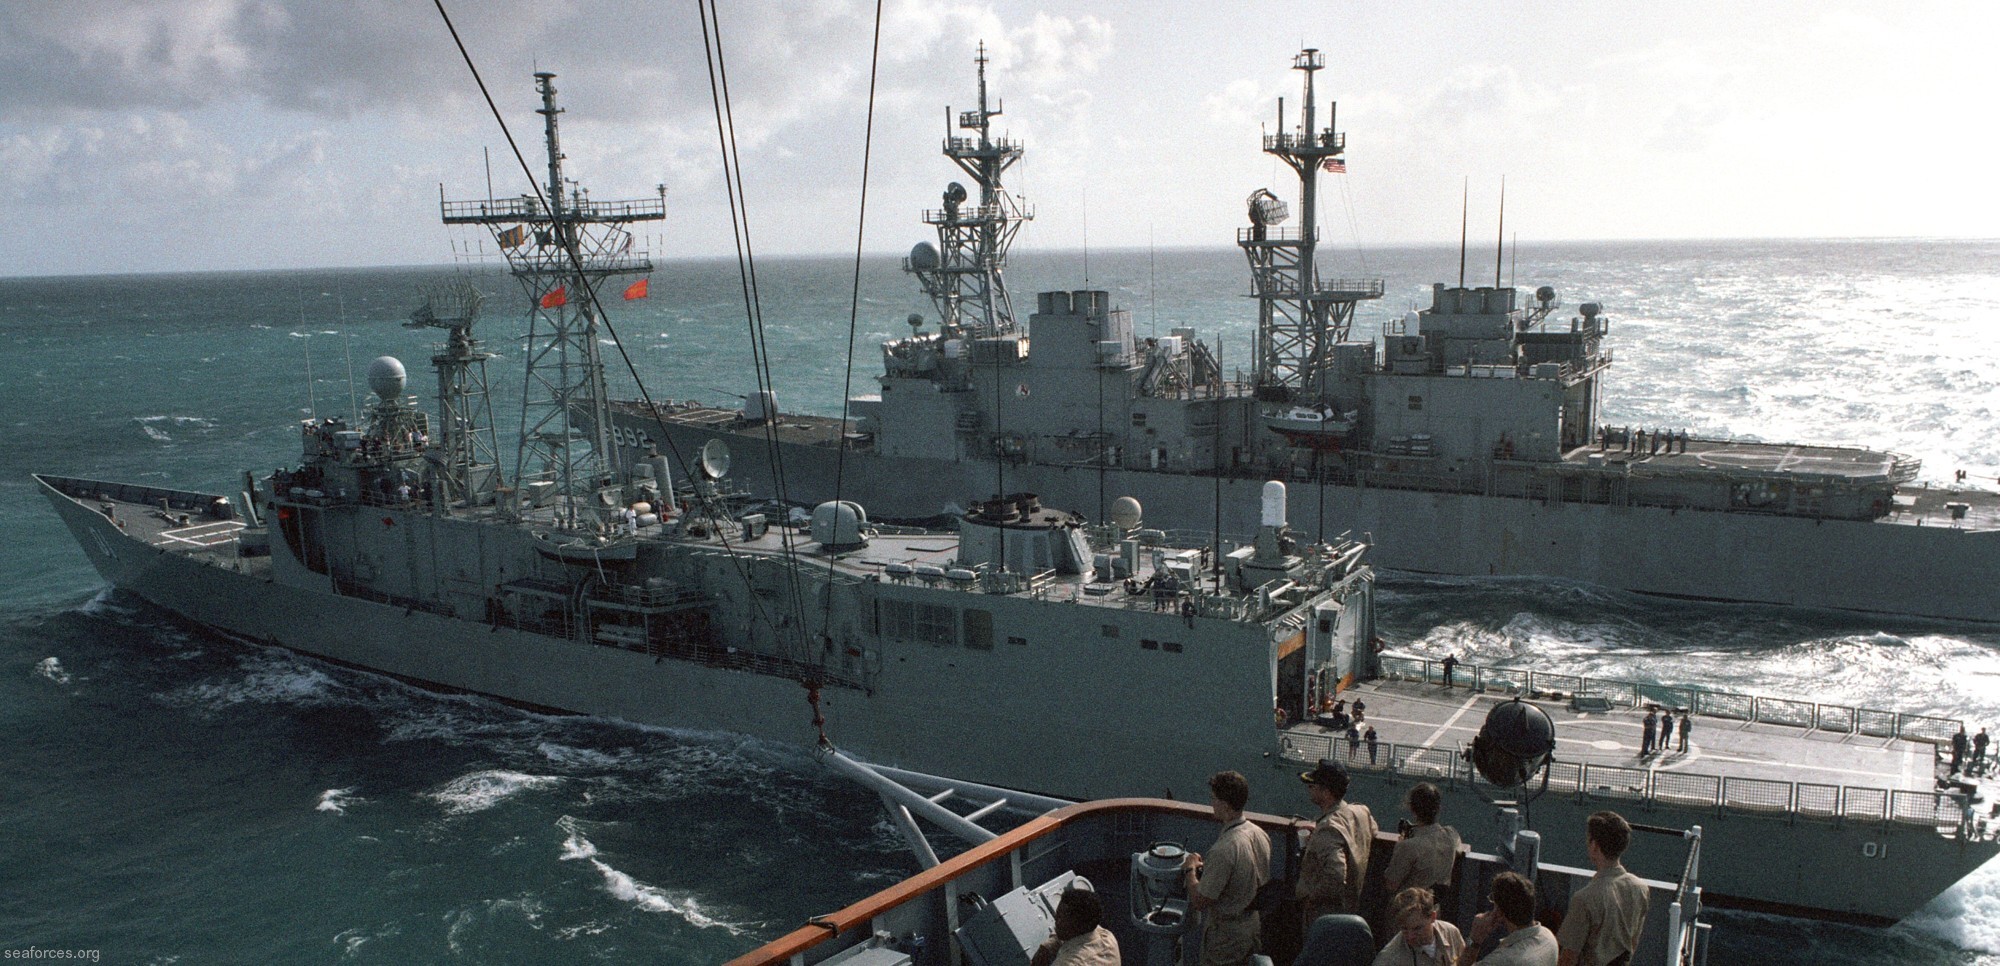 ffg-01 hmas adelaide guided missile frigate royal australian navy 1992 08